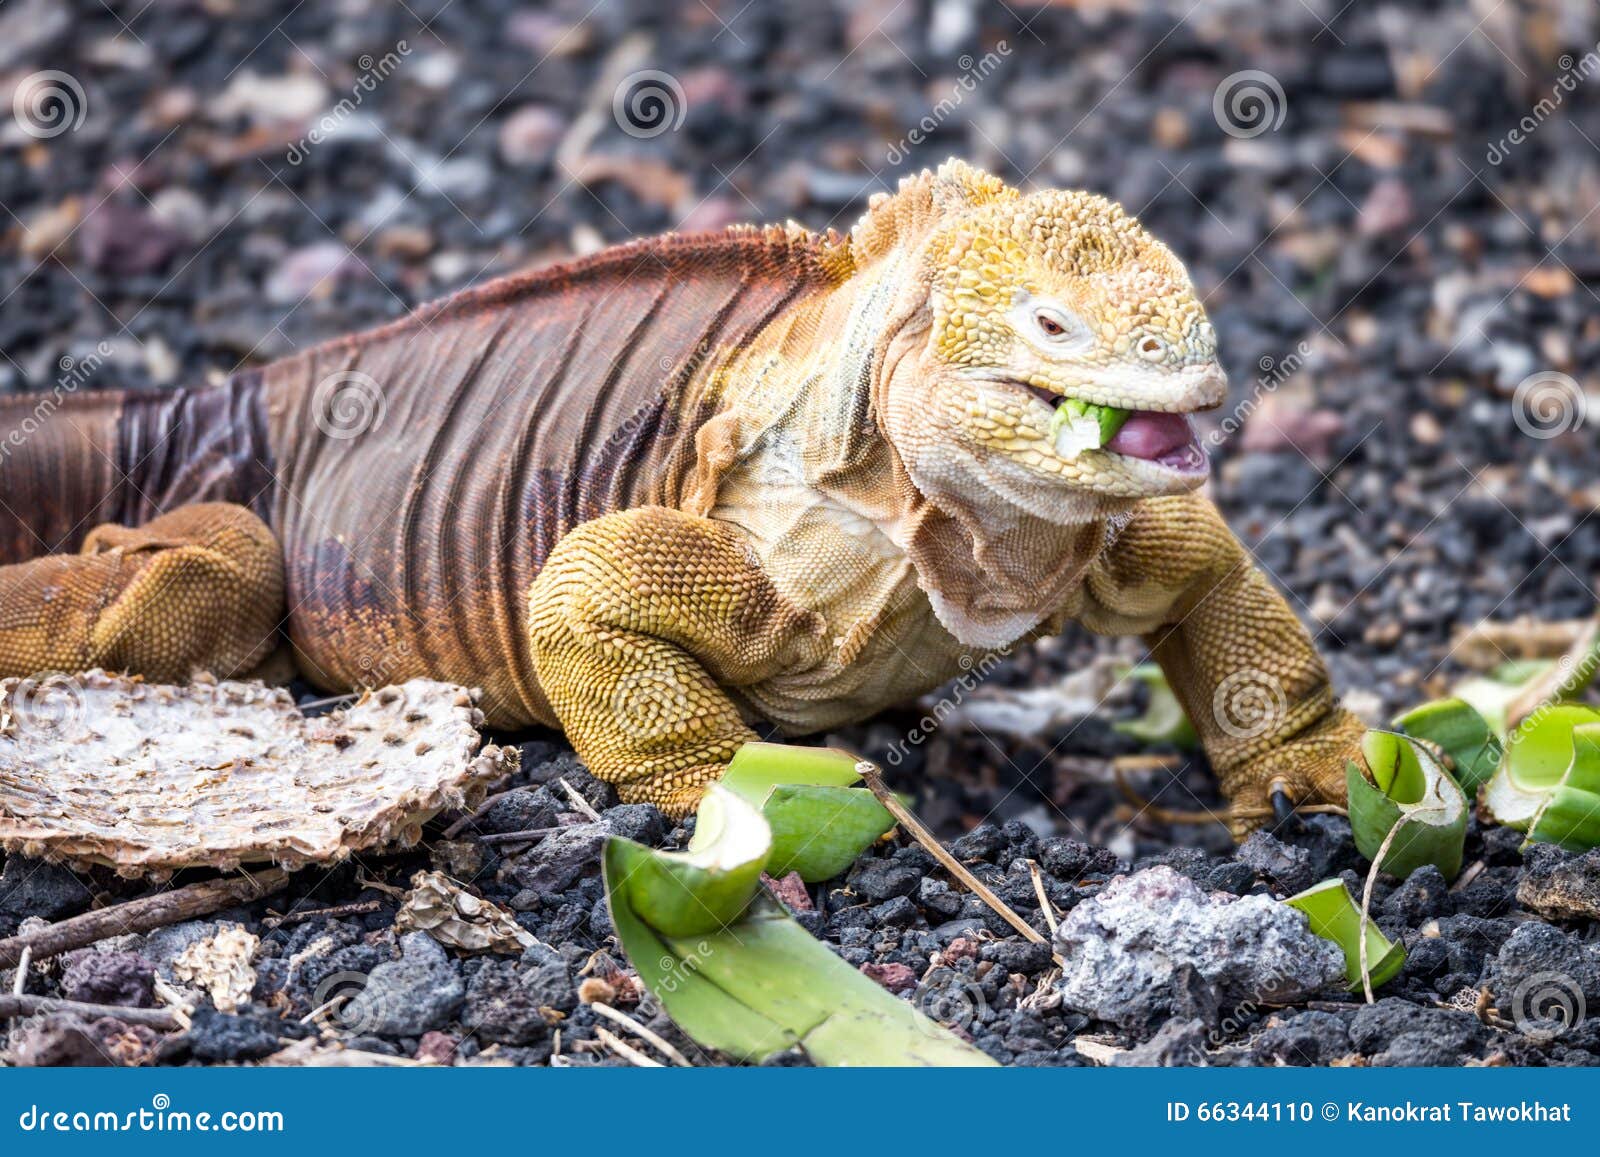 galapagos land iguana eating